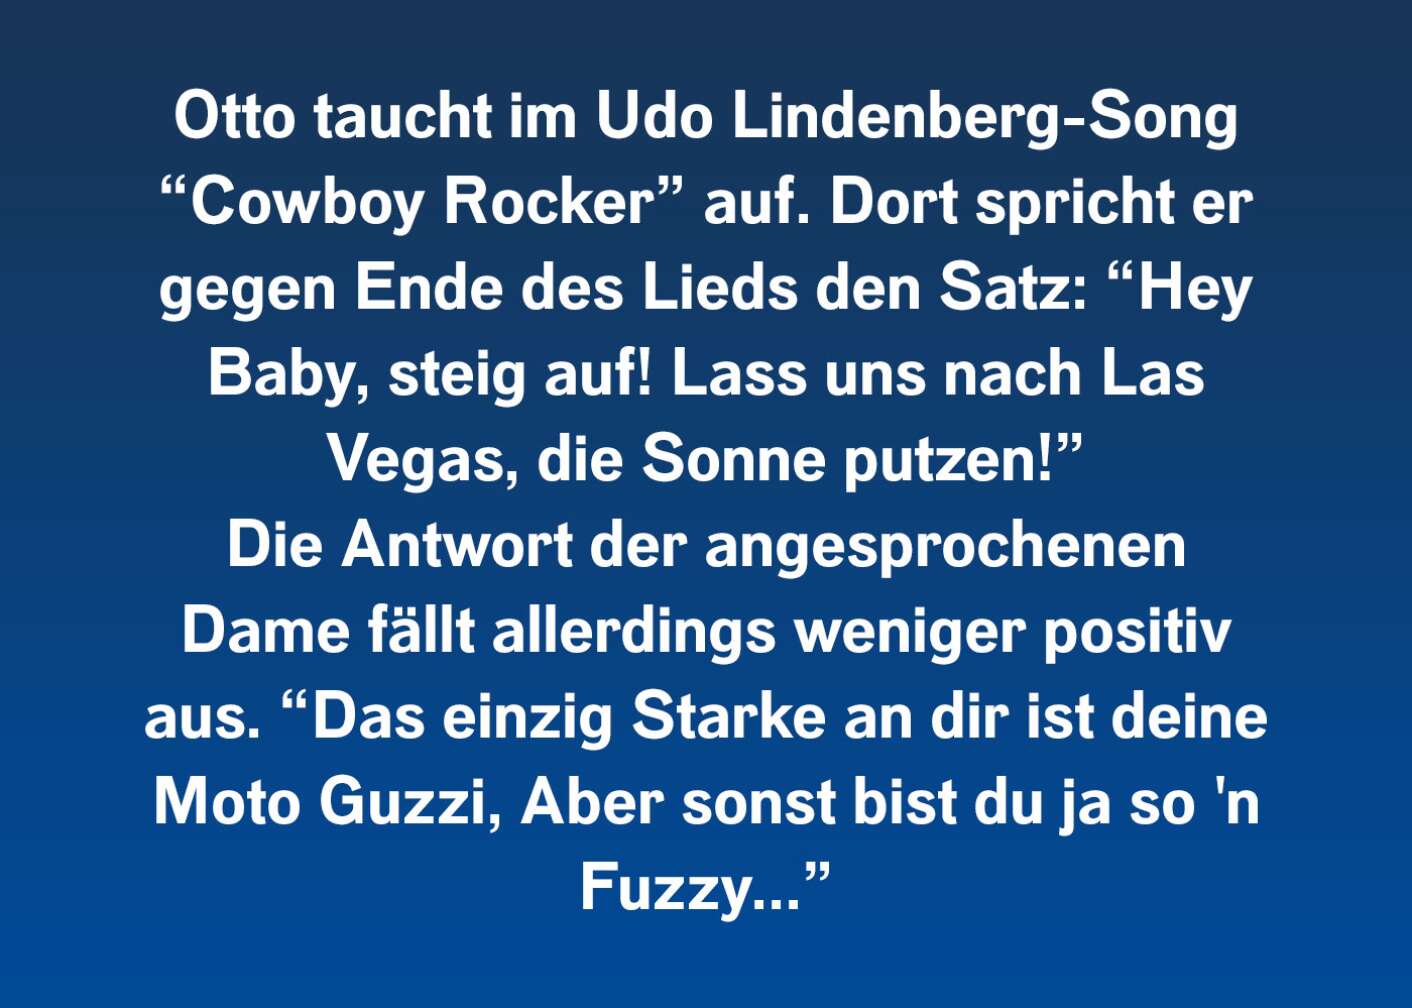 Otto taucht im Udo Lindenberg-Song "Cowboy Rocker" auf. Dort spricht er gegen Ende des Lieds den Satz: "Hey Baby, steig auf! Lass uns nach Las Vegas, die Sonne putzen!" Die Antwort der angesprochenen Dame fällt allerdings weniger positiv aus. "Das einzig starke an dir ist deine Moto Guzzi, aber sonst bist du ja so'n Fuzzy..."